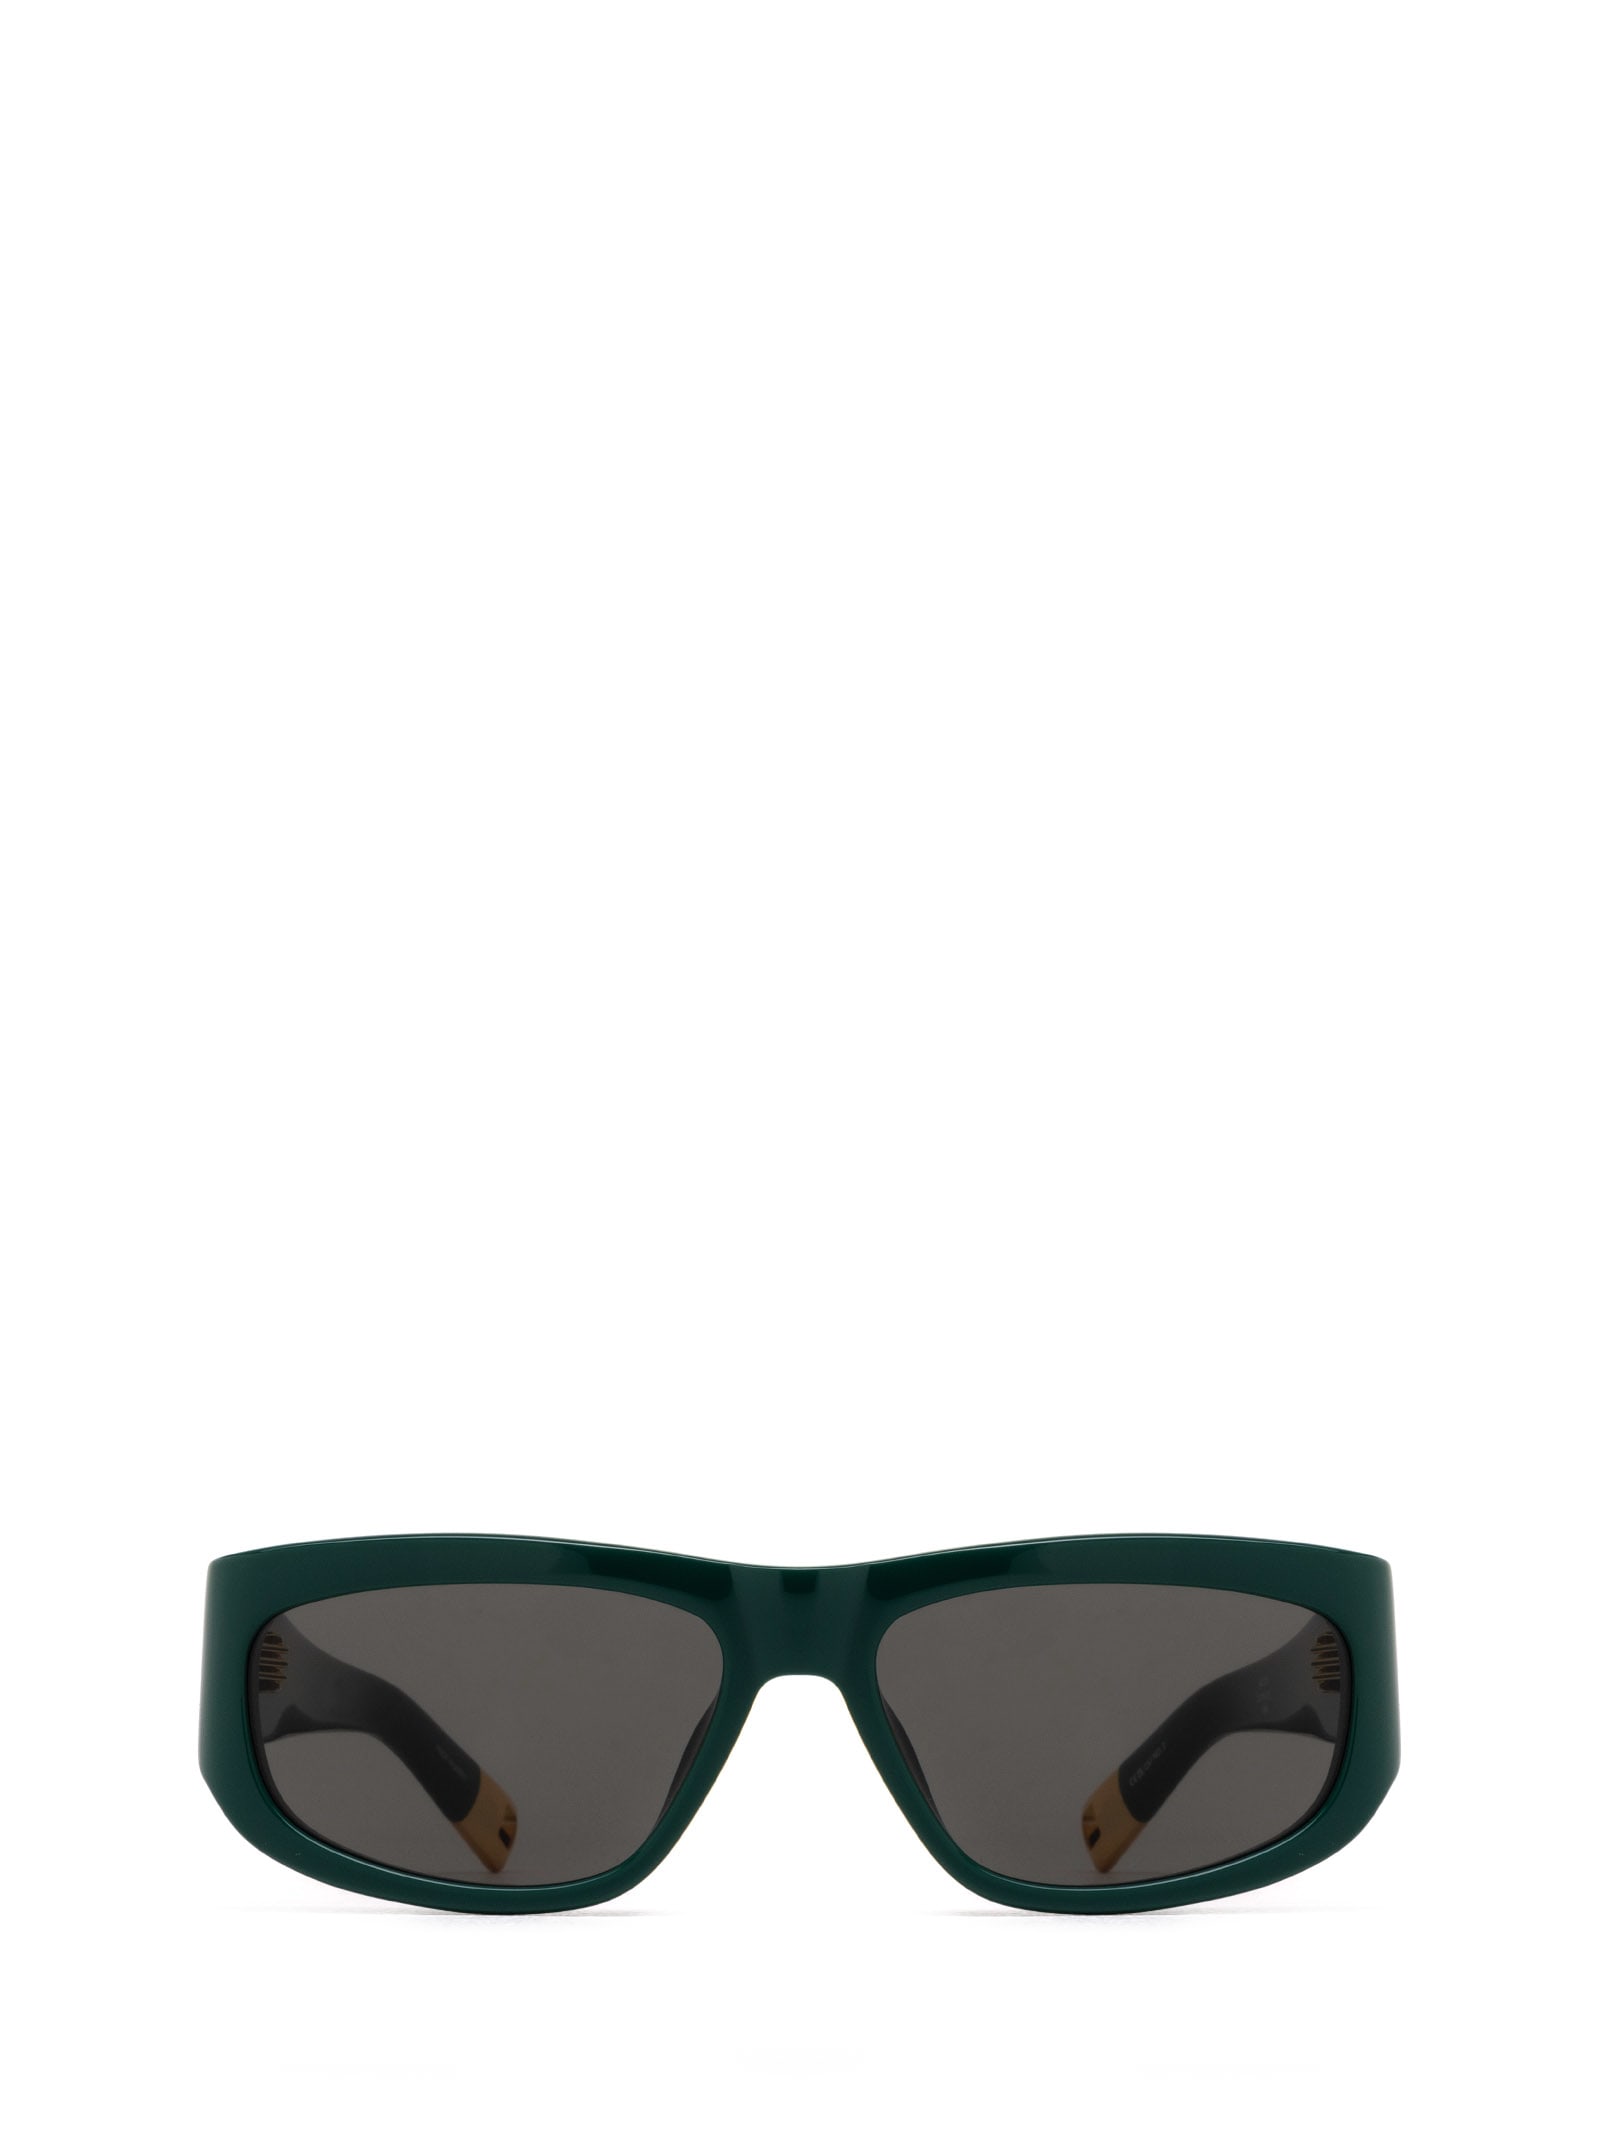 Jac2 Green Sunglasses